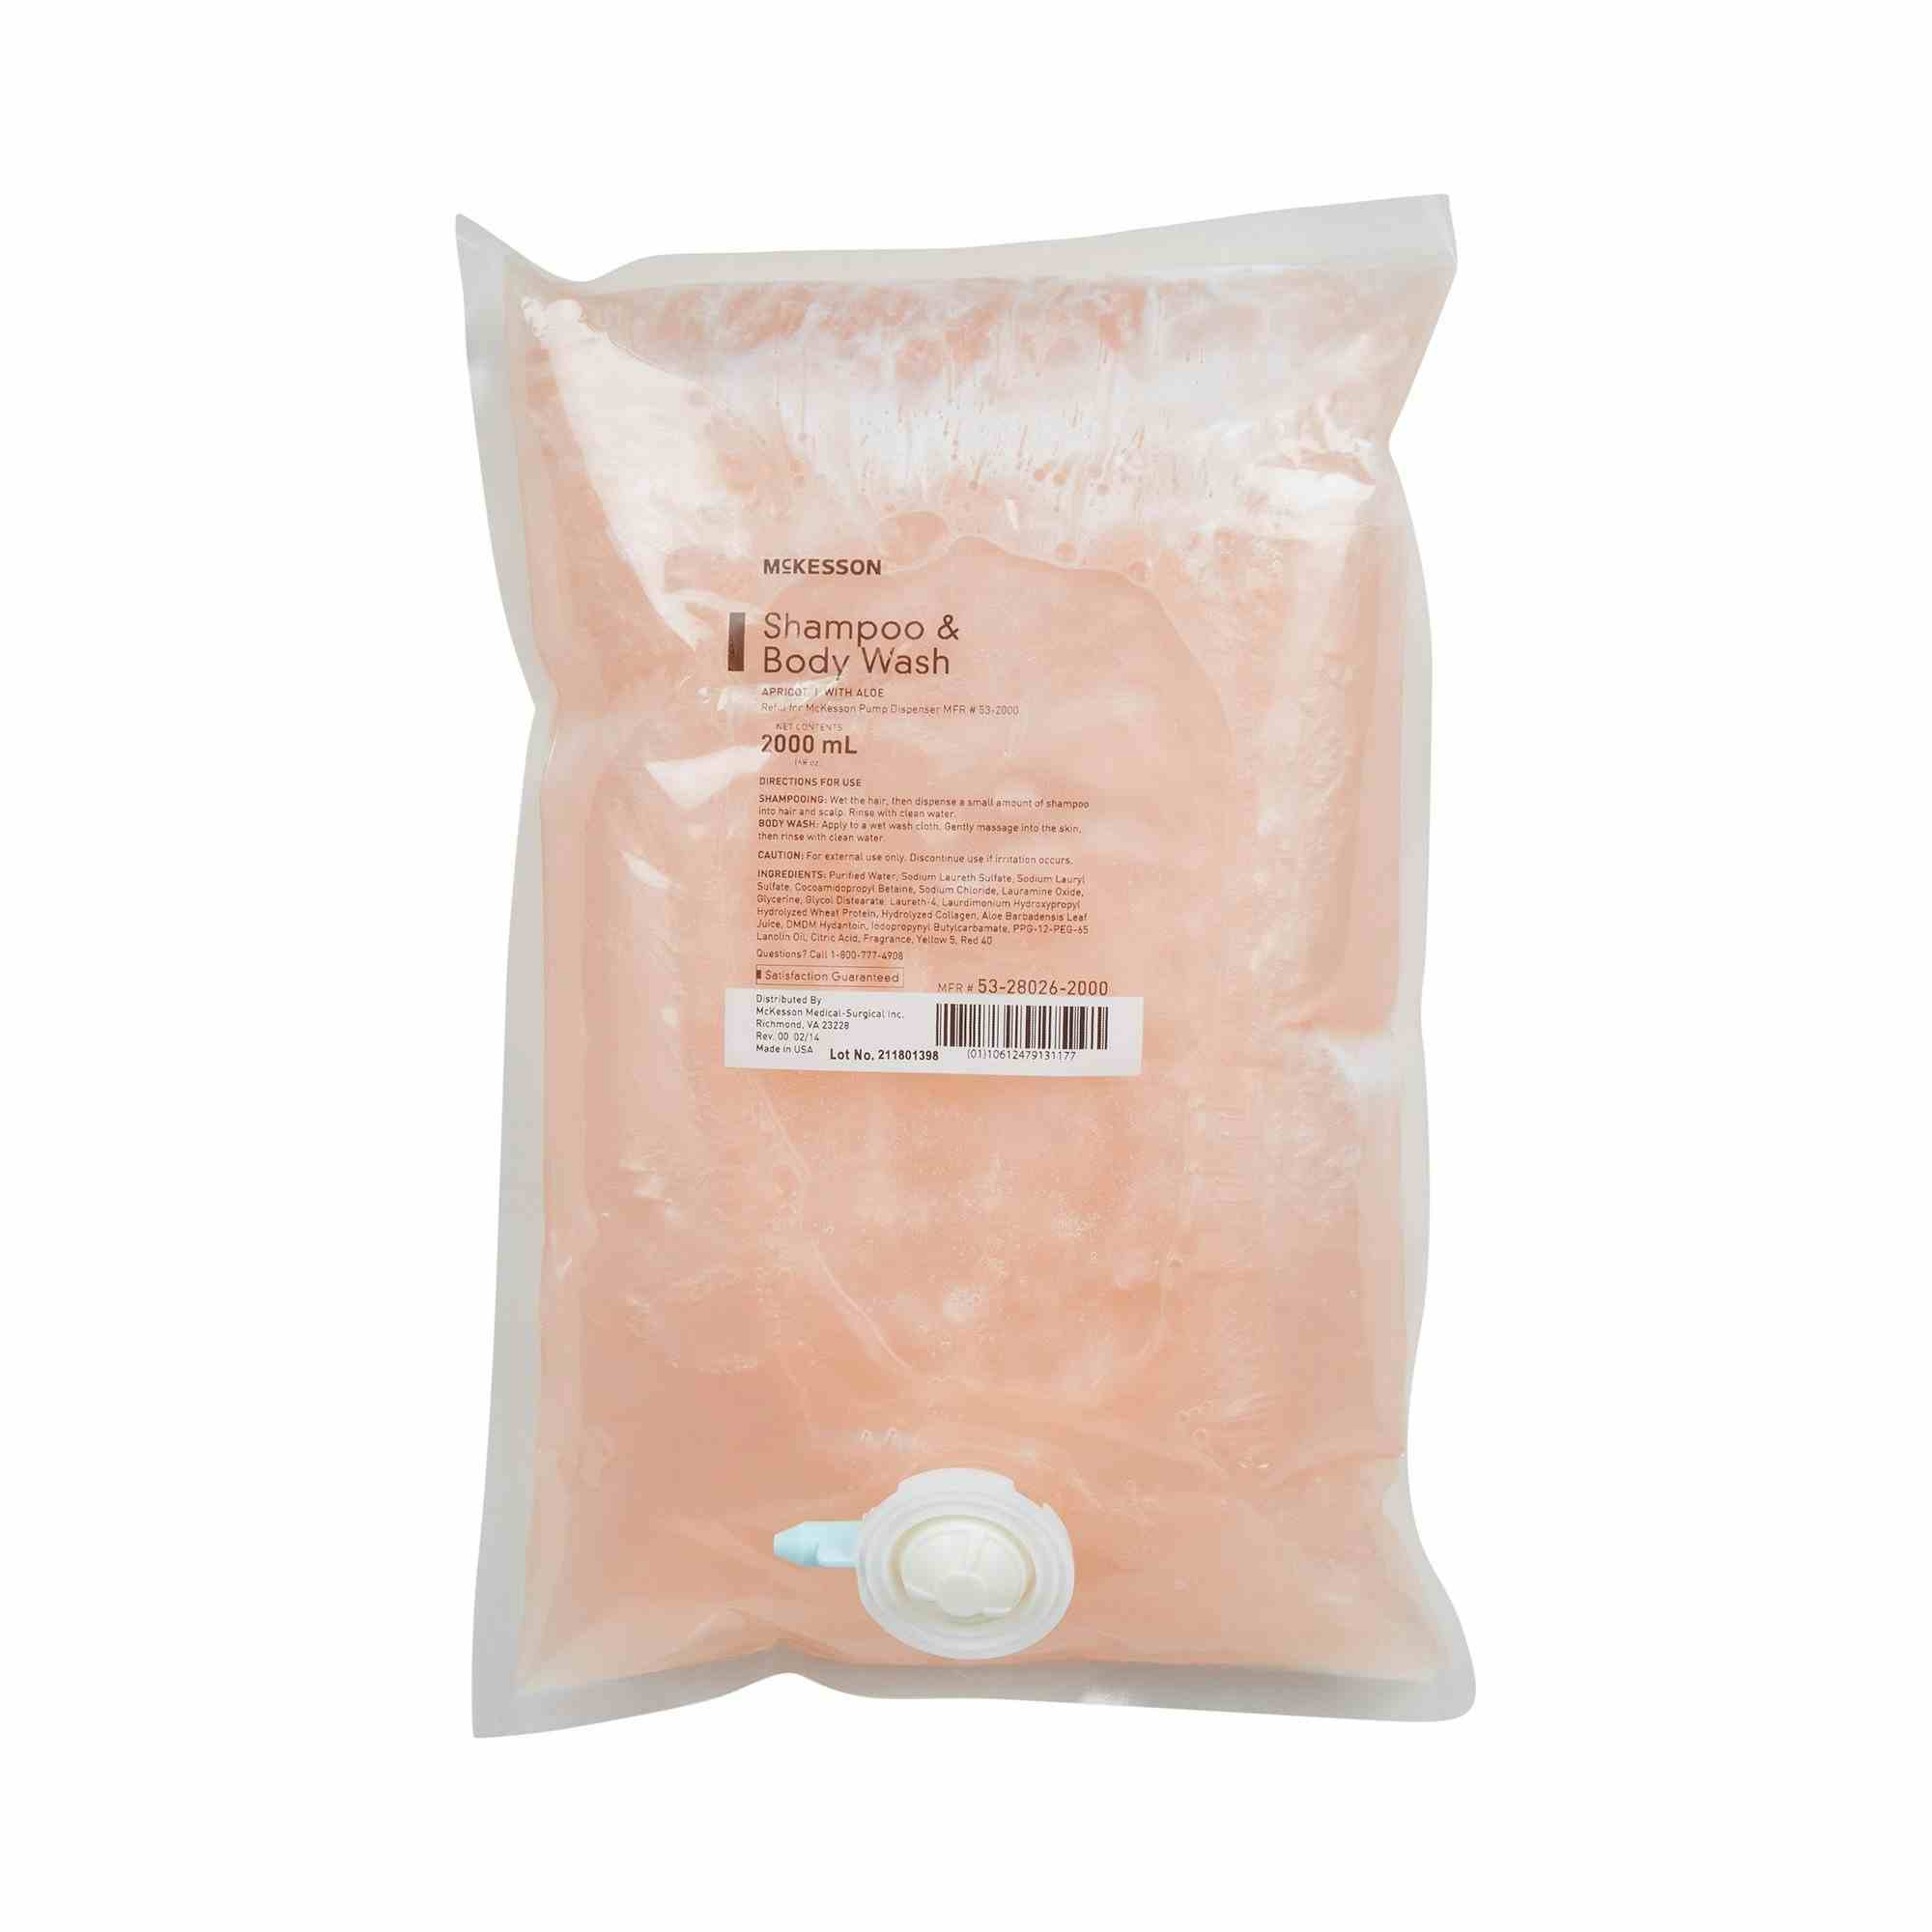 McKesson Shampoo and Body Wash Refill, Apricot Scent, 53-28026-2000, 2,000 mL - 1 Each